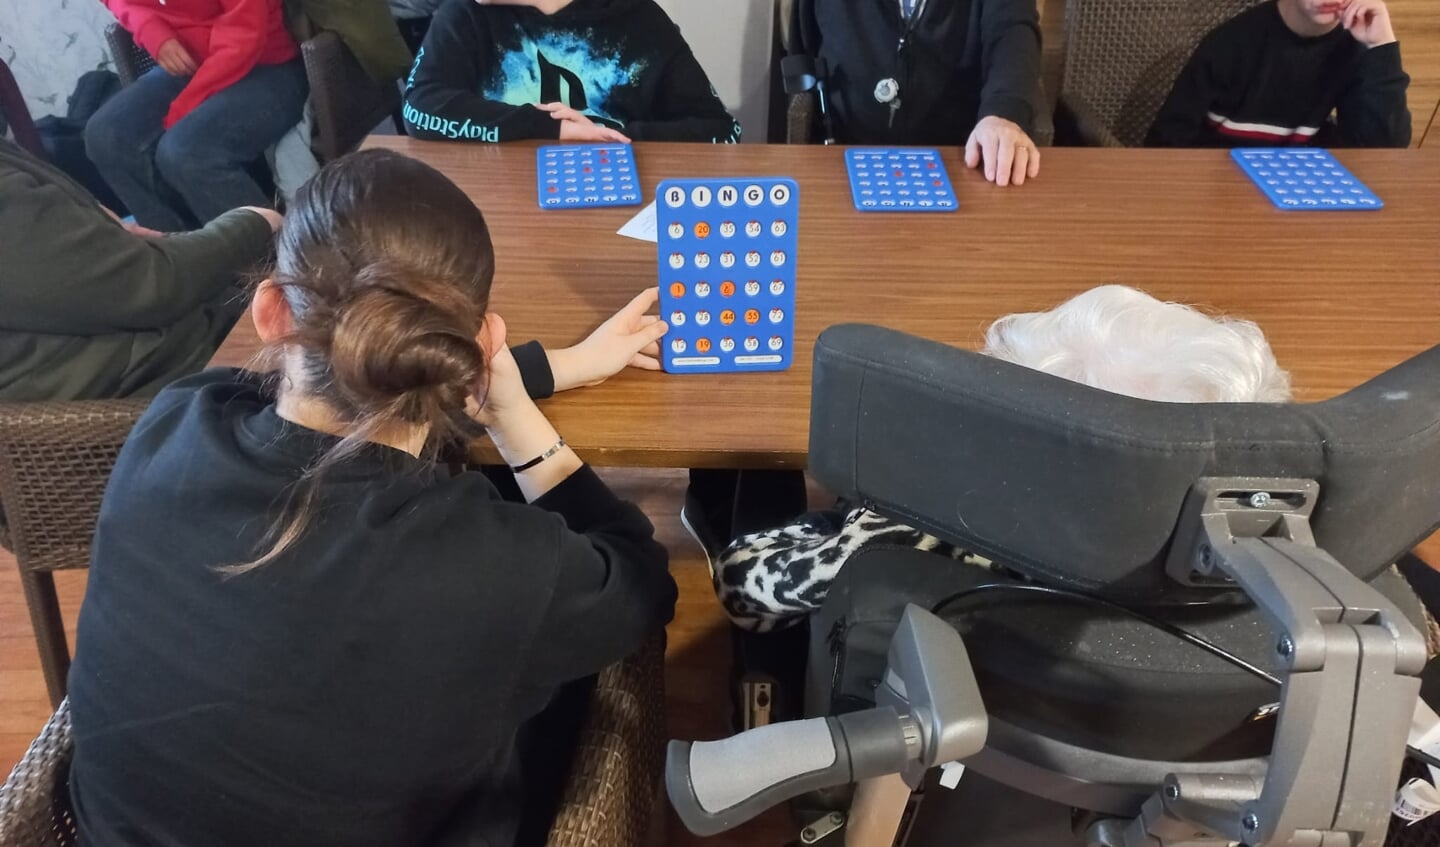 De kinderen helpen de senioren met het invullen van de bingokaart.